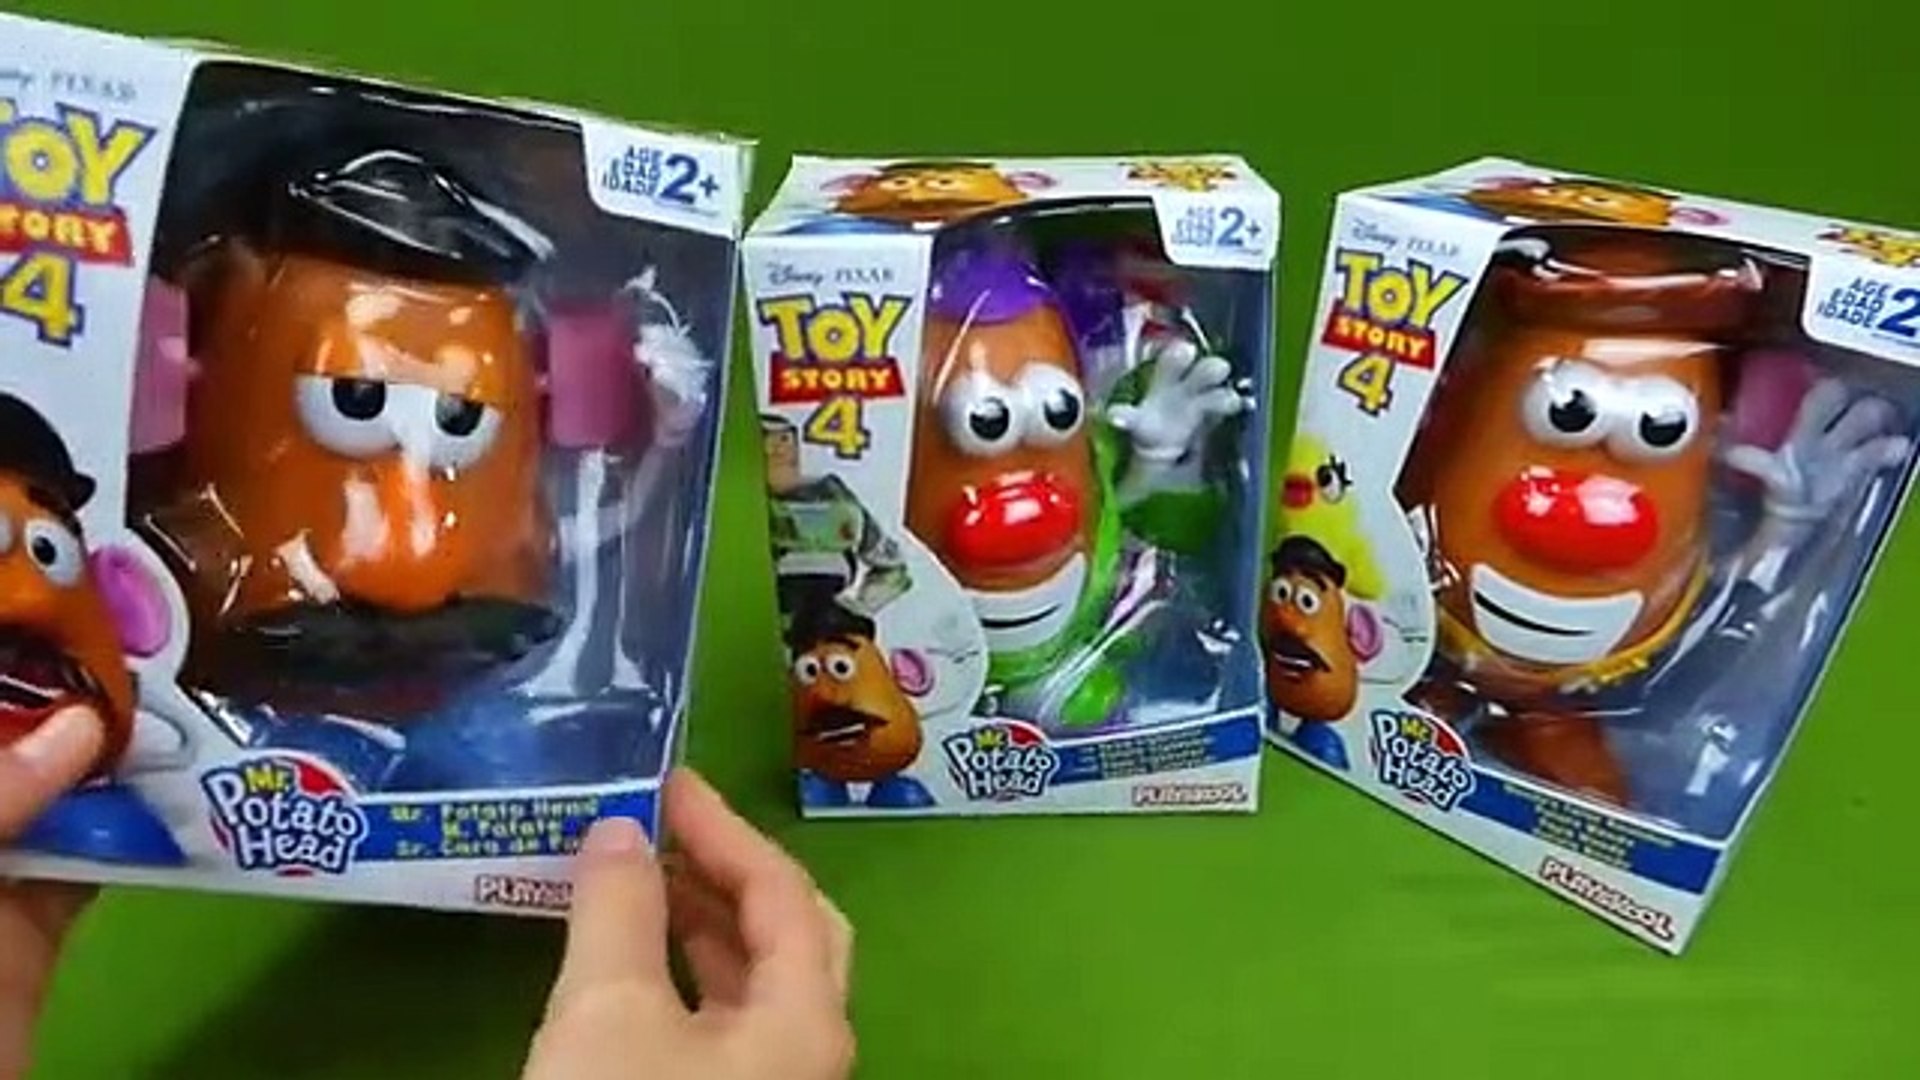 Toy Story Woody Potato Head